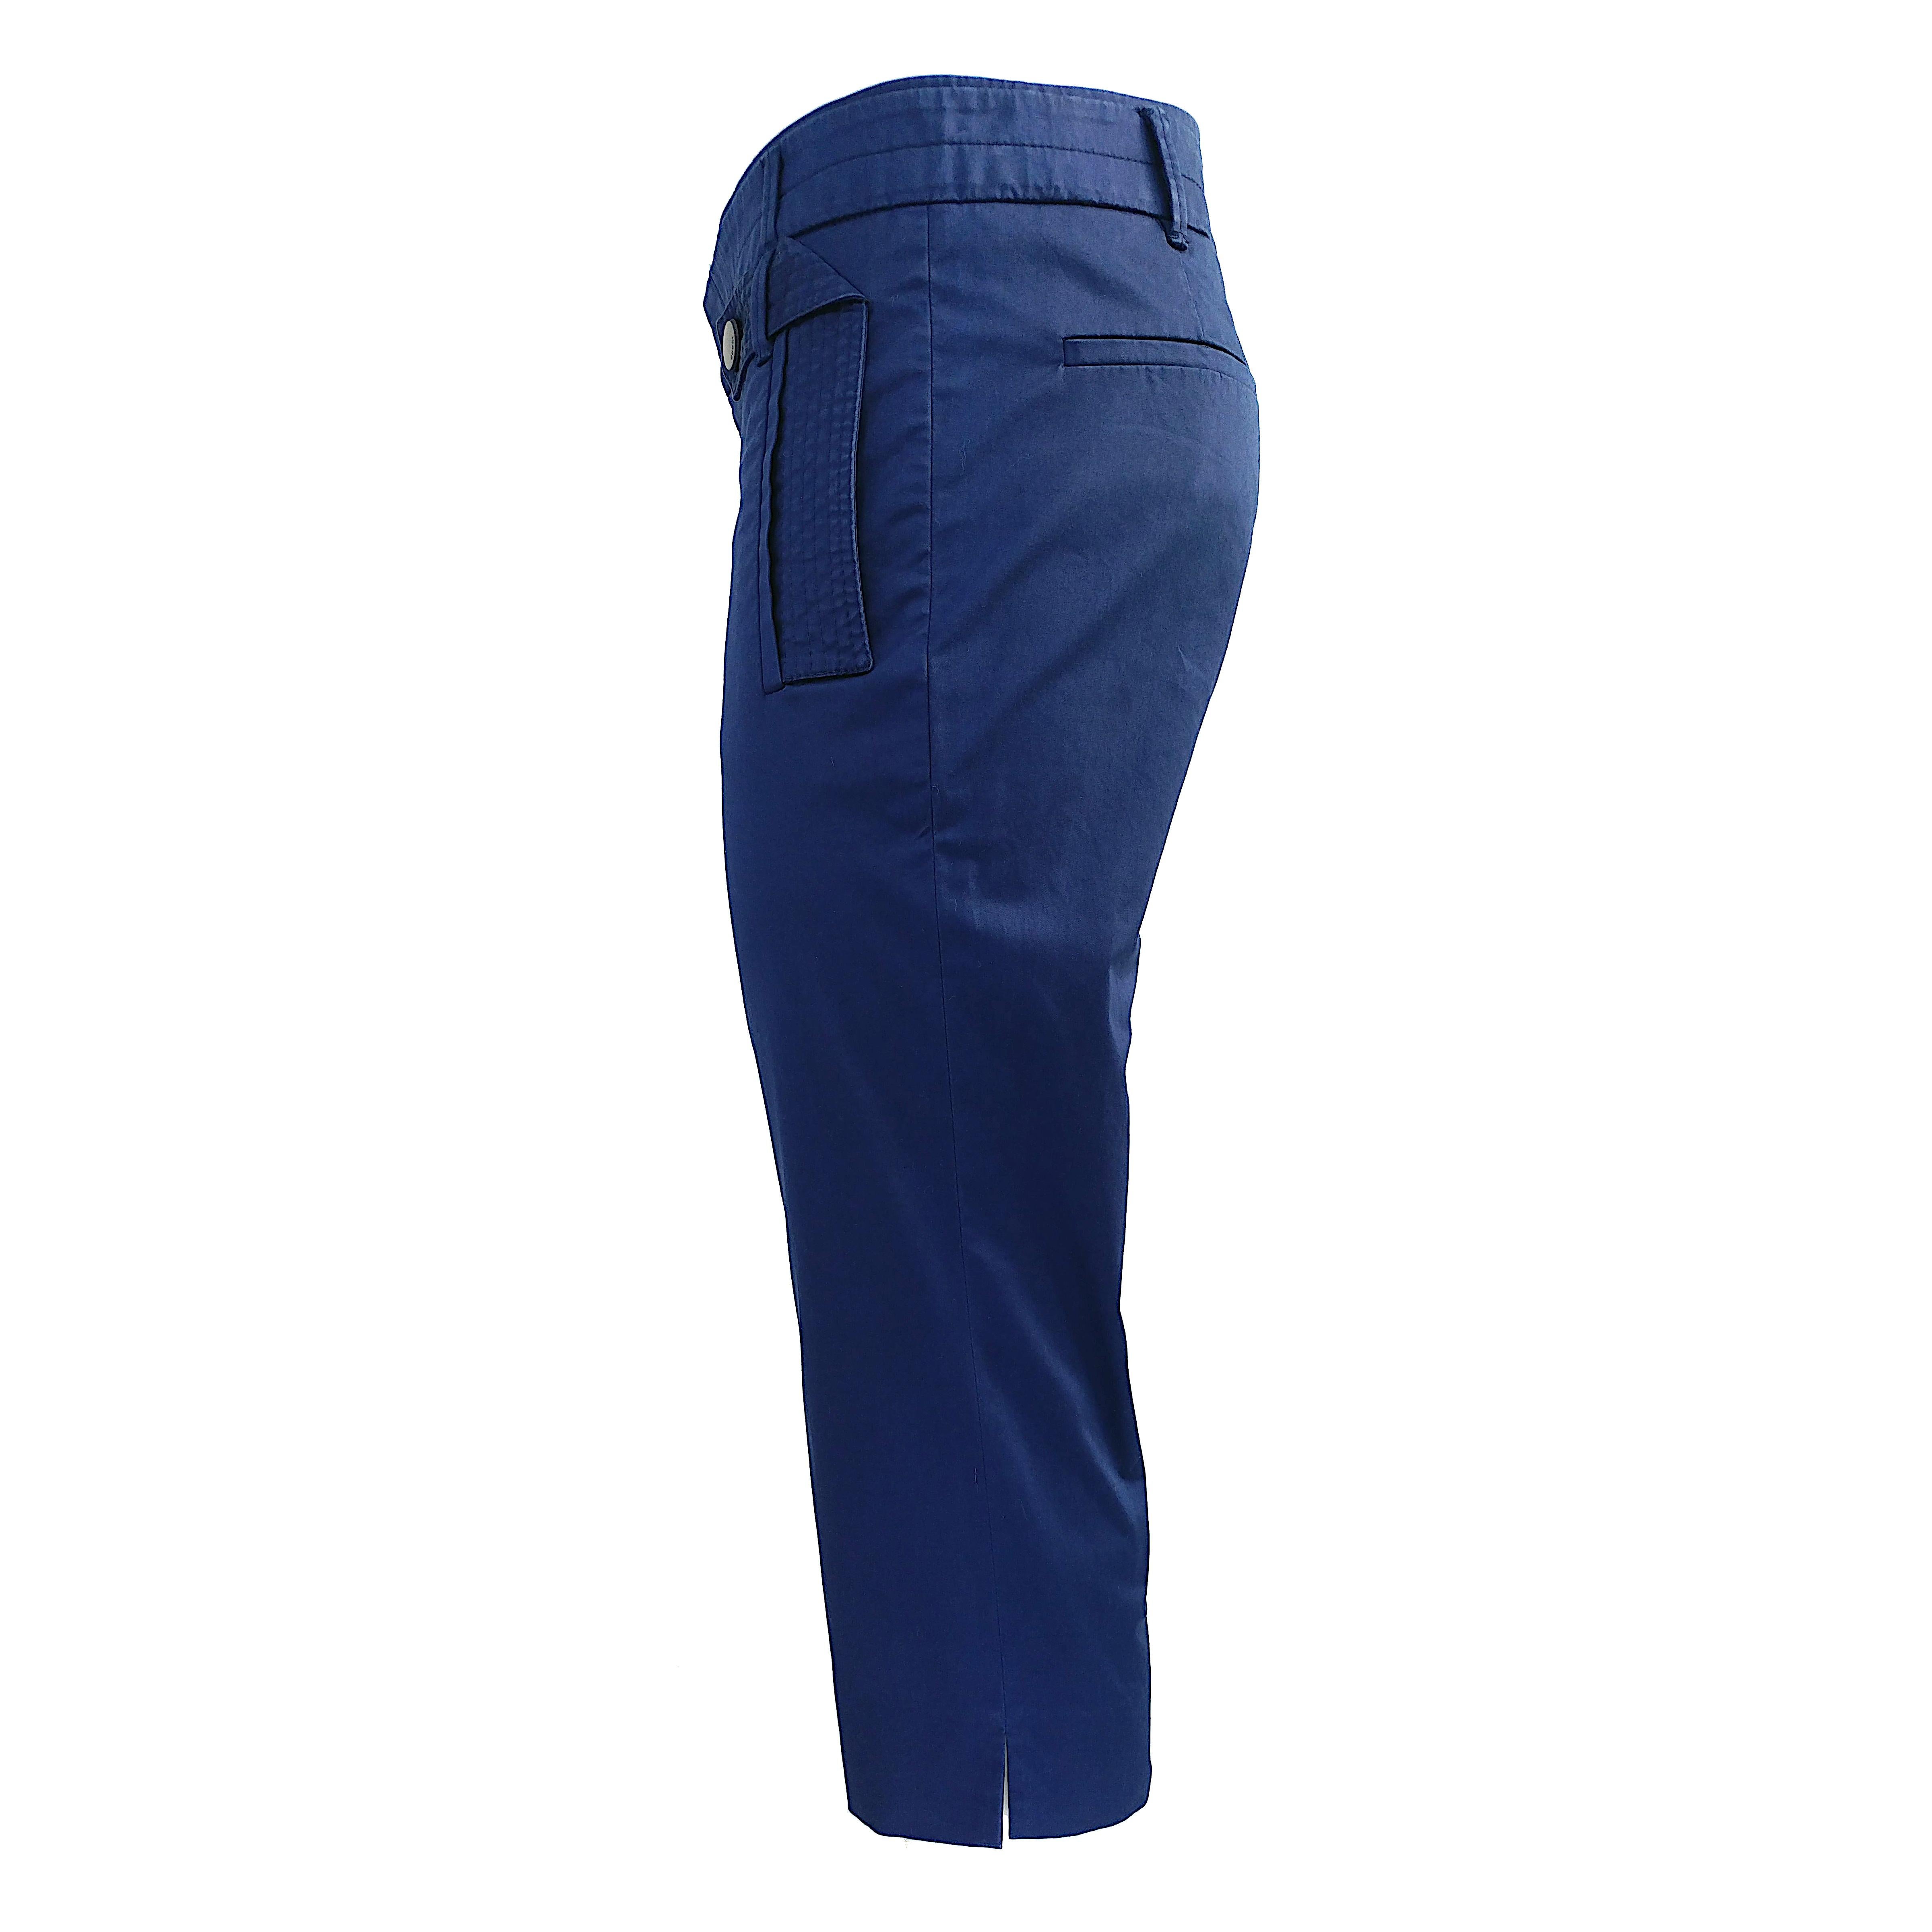 Voici ce pantalon Capri de Gucci, un mélange élégant de confort et de sophistication. Fabrice en coton extensible dans une teinte bleu cobalt vibrante, ces capris 3/4 sont un ajout chic à votre garde-robe. Le tissu extensible assure une coupe